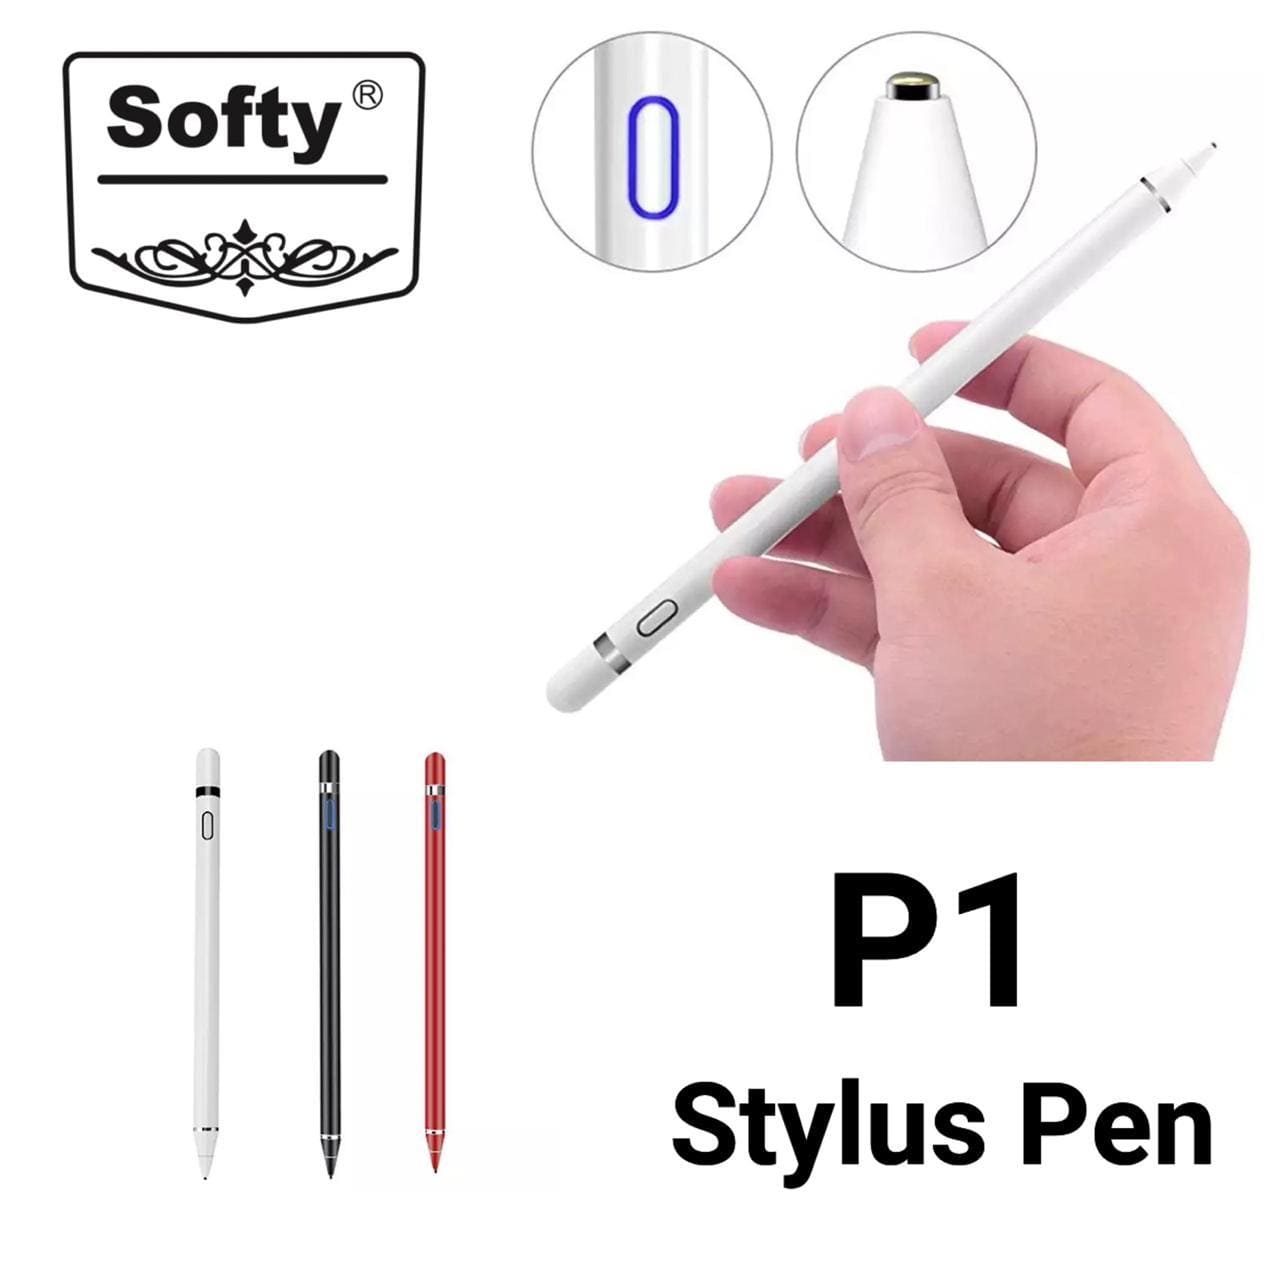 softy stylus pen P-1-stylus pen-dealsplant